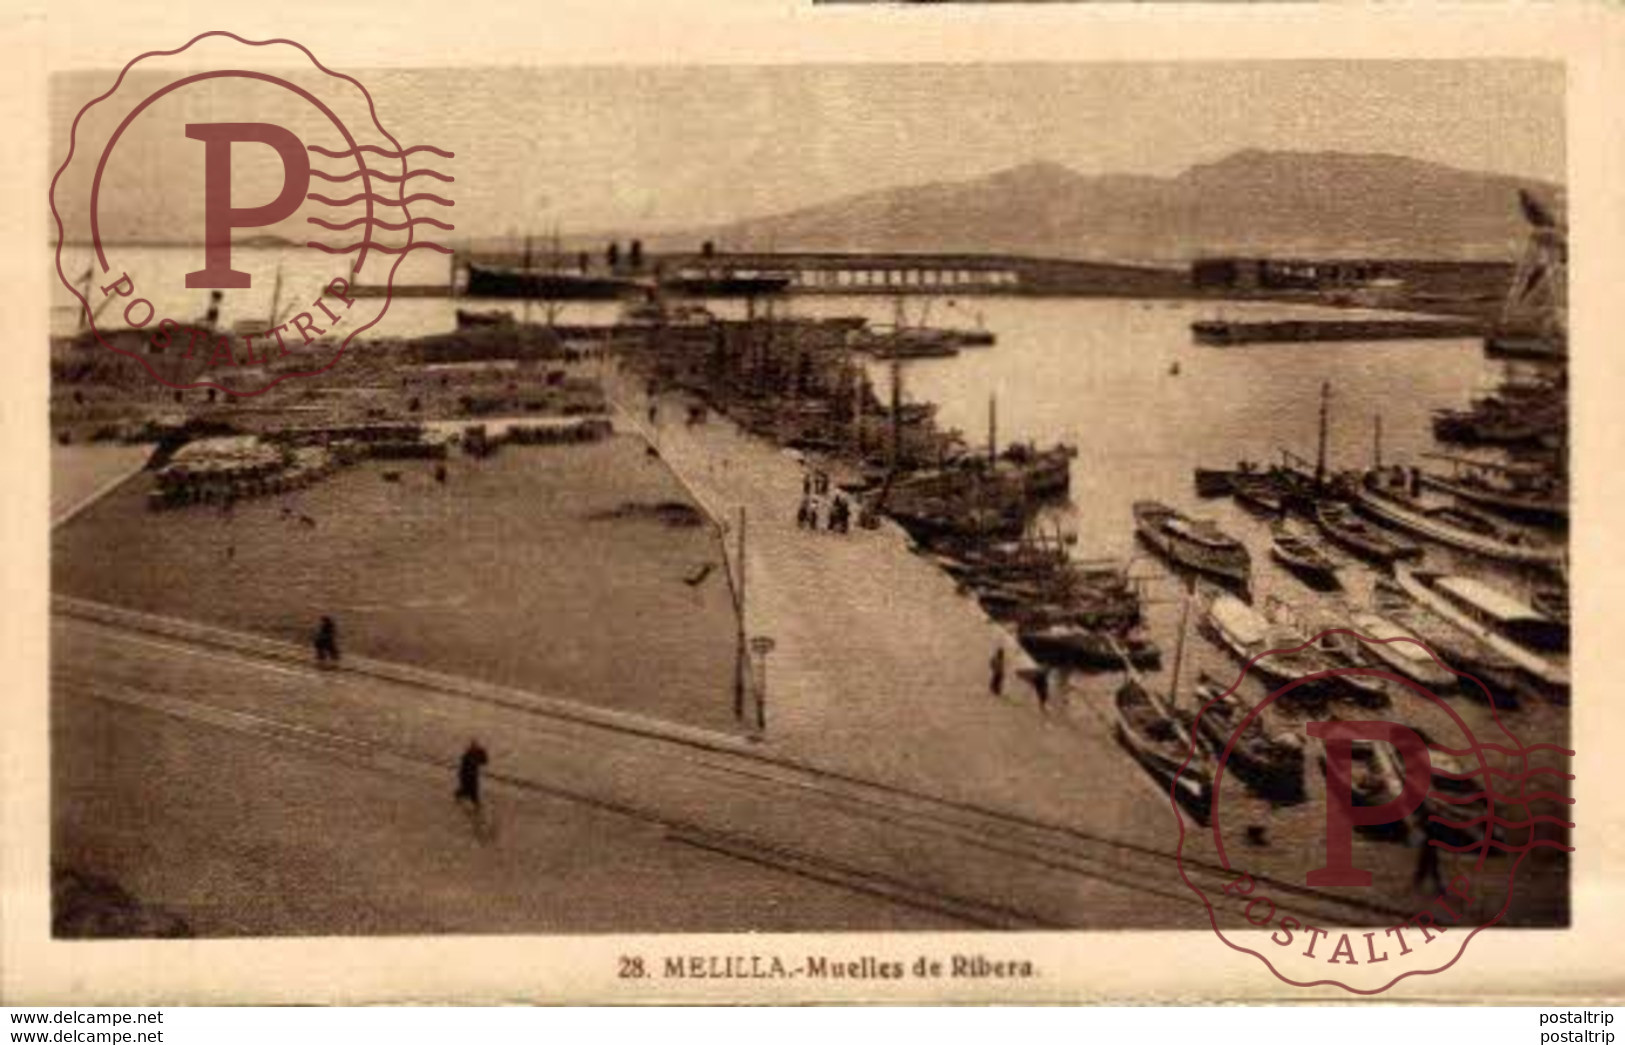 MELILLA. MUELLES DE RIBERA - Melilla